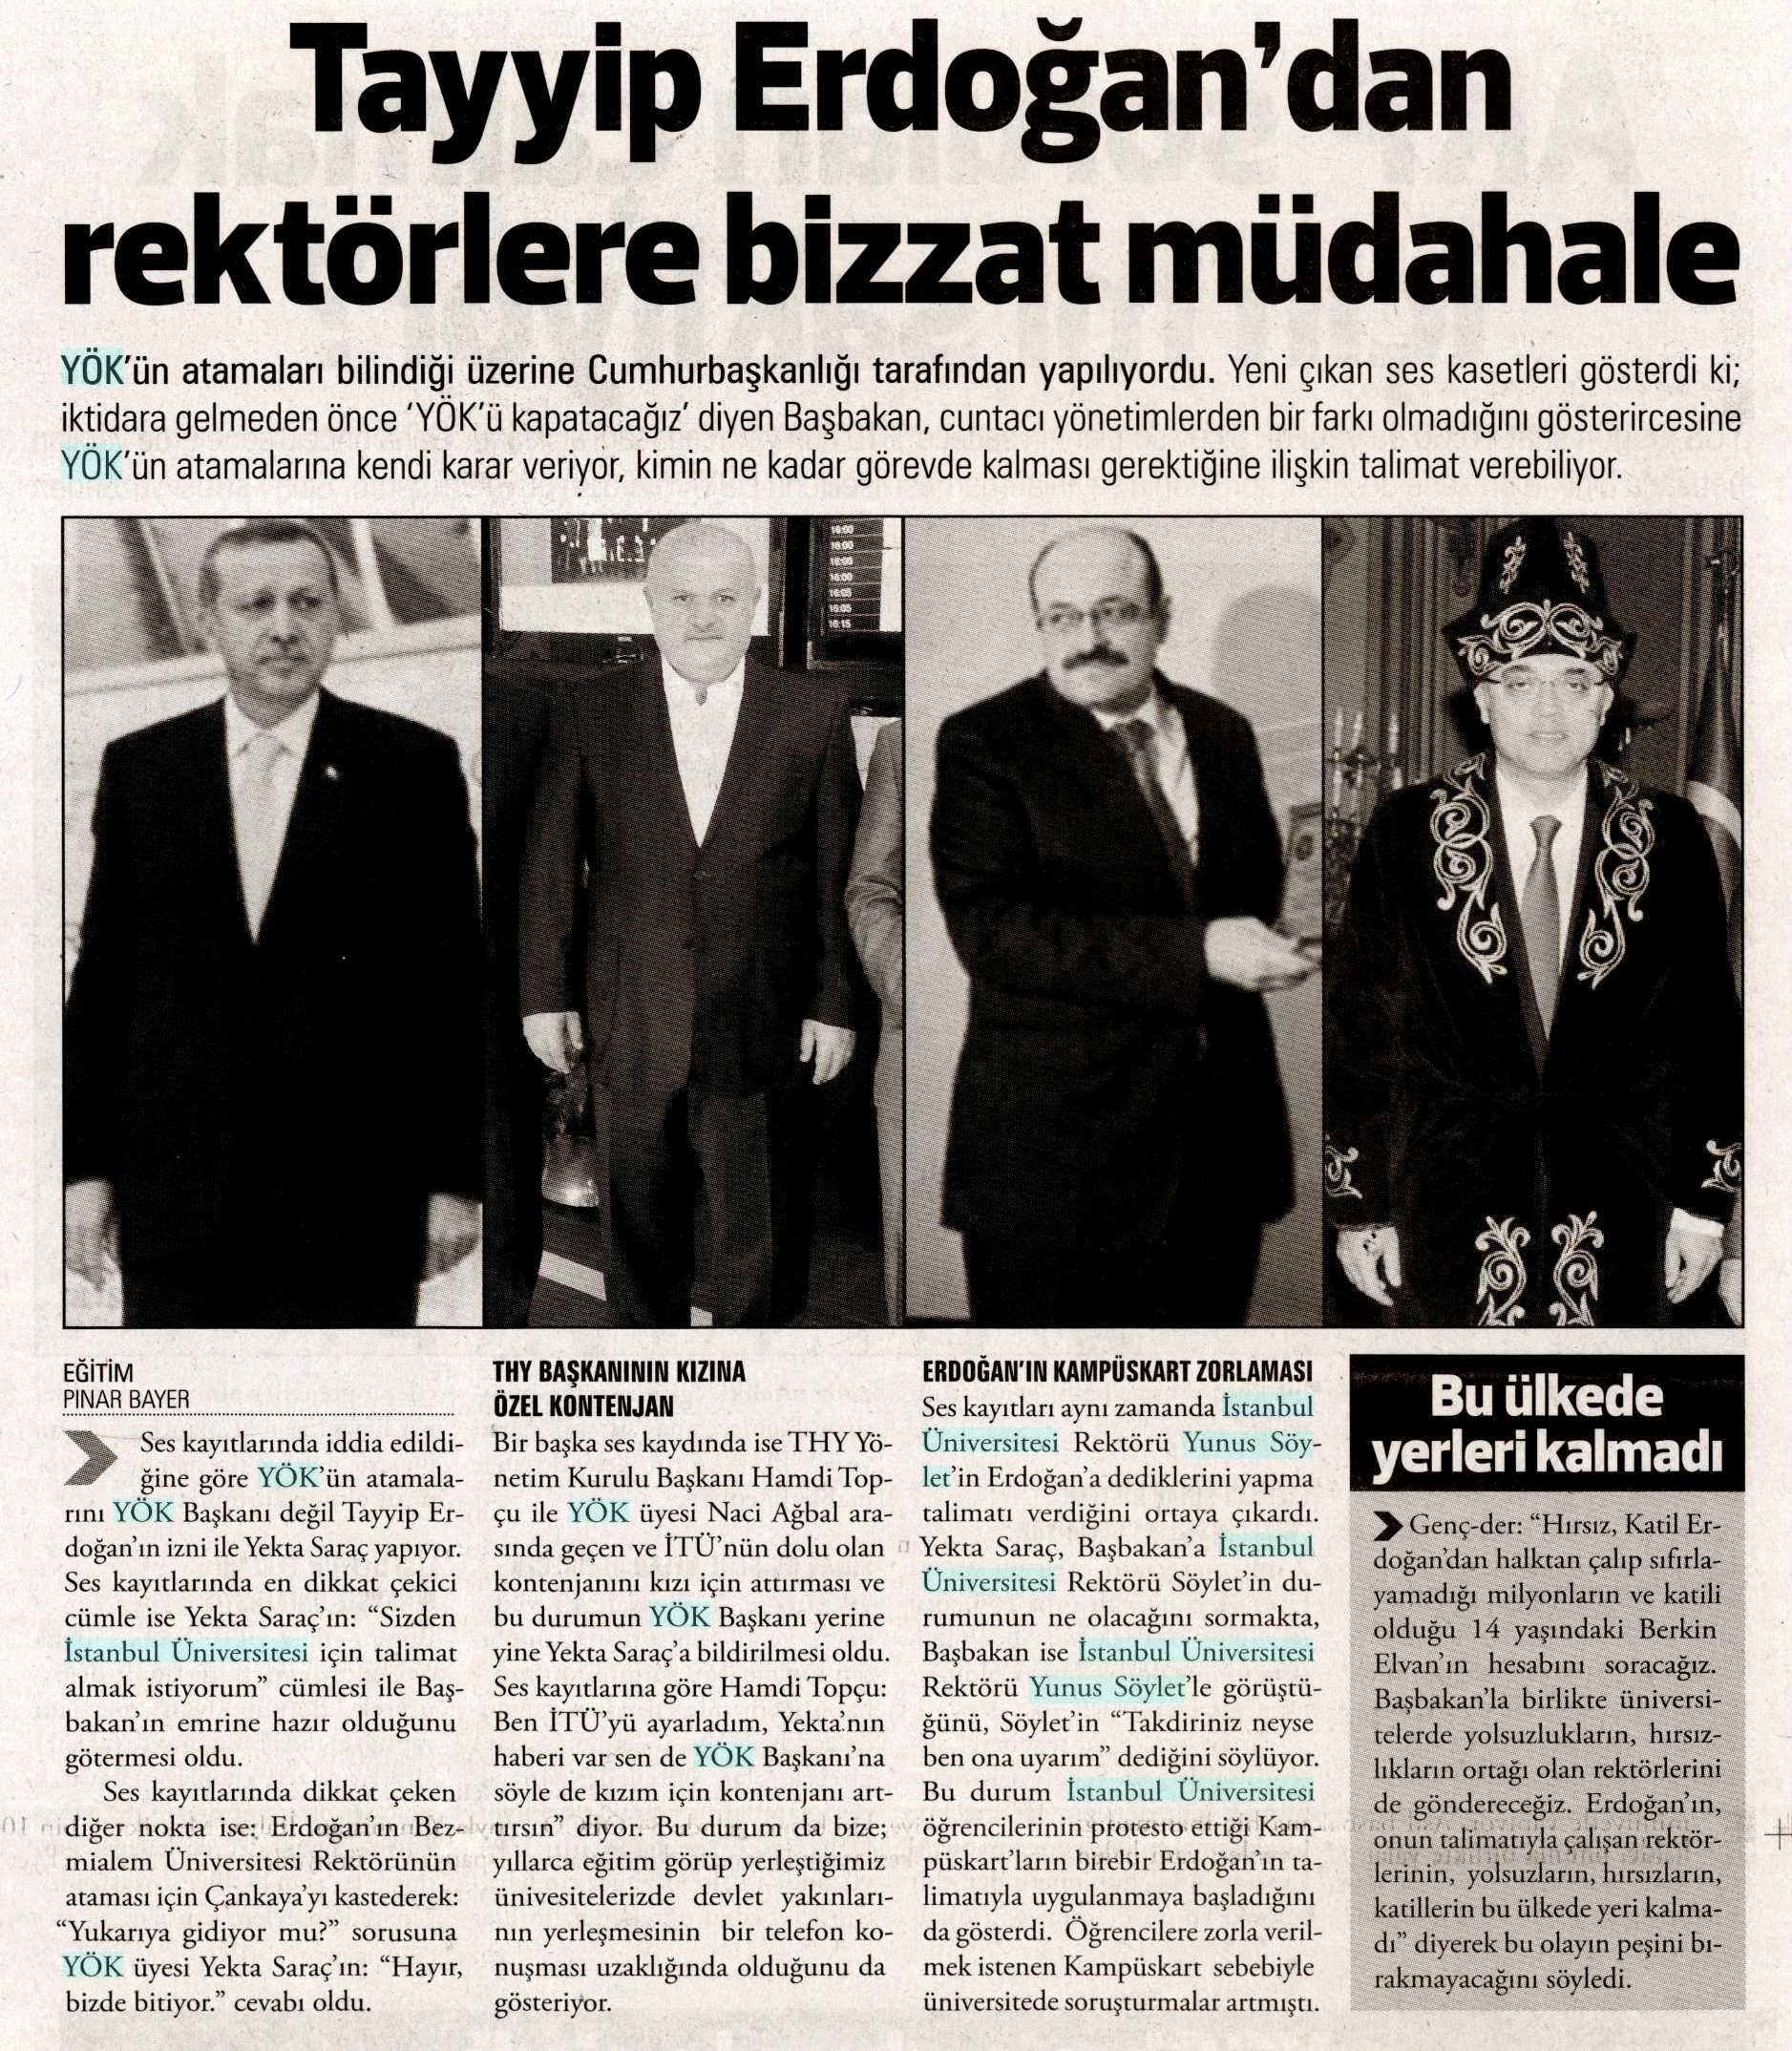 TAYYîP ERDOGAN'DAN REKTÖRLERE BIZZAT MÜDAHALE Yayın Adı : Yarın Gazetesi